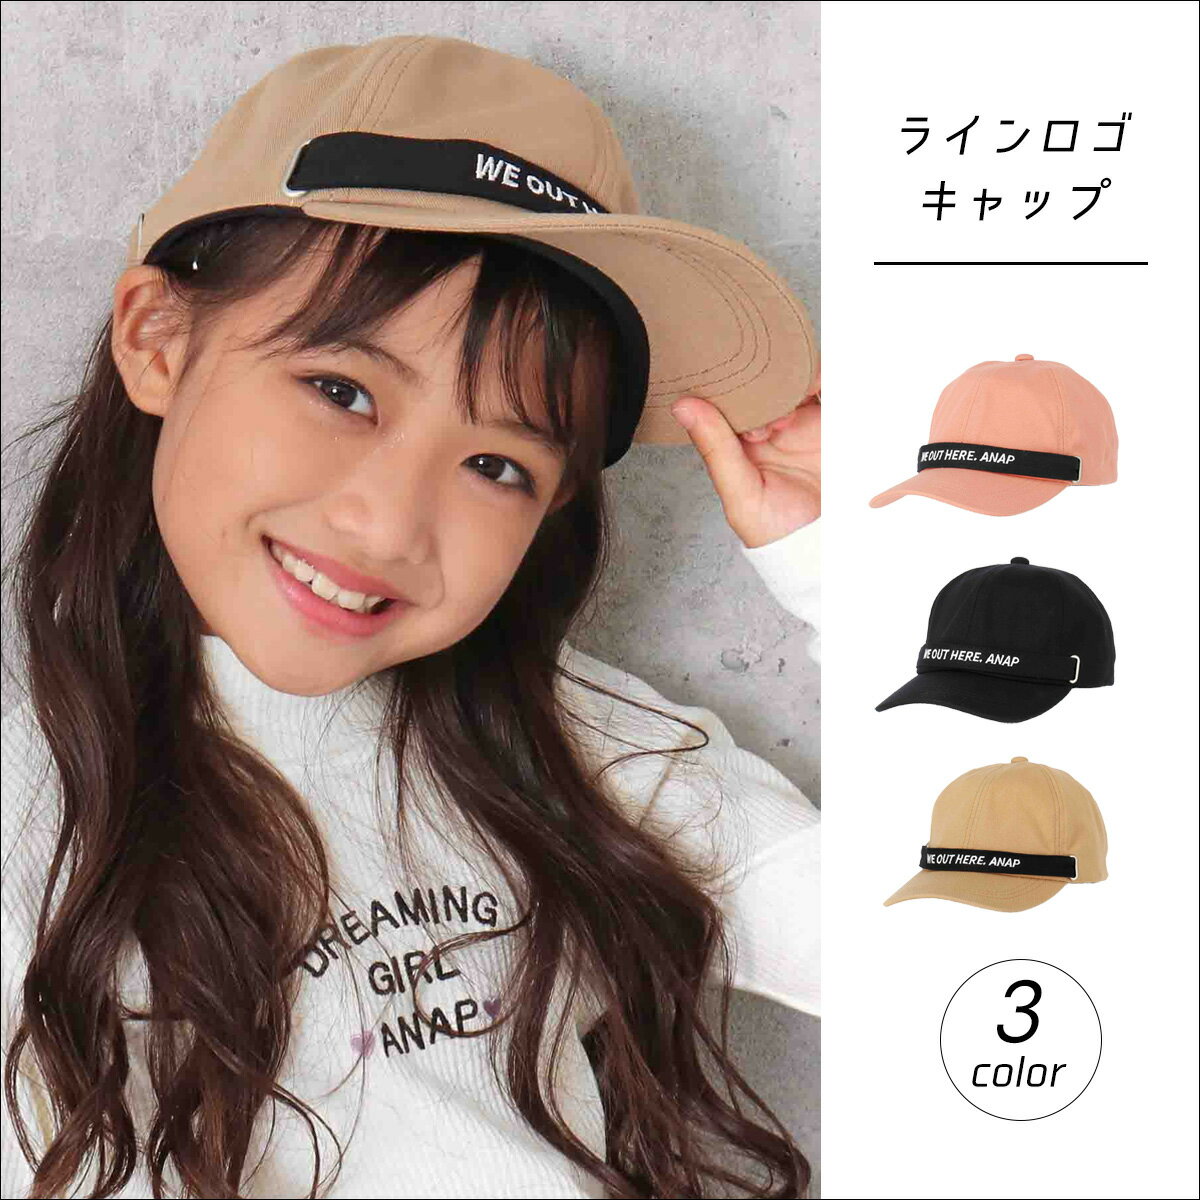 通学帽子 小学生の女の子にぴったりな可愛いキッズキャップのおすすめランキング キテミヨ Kitemiyo